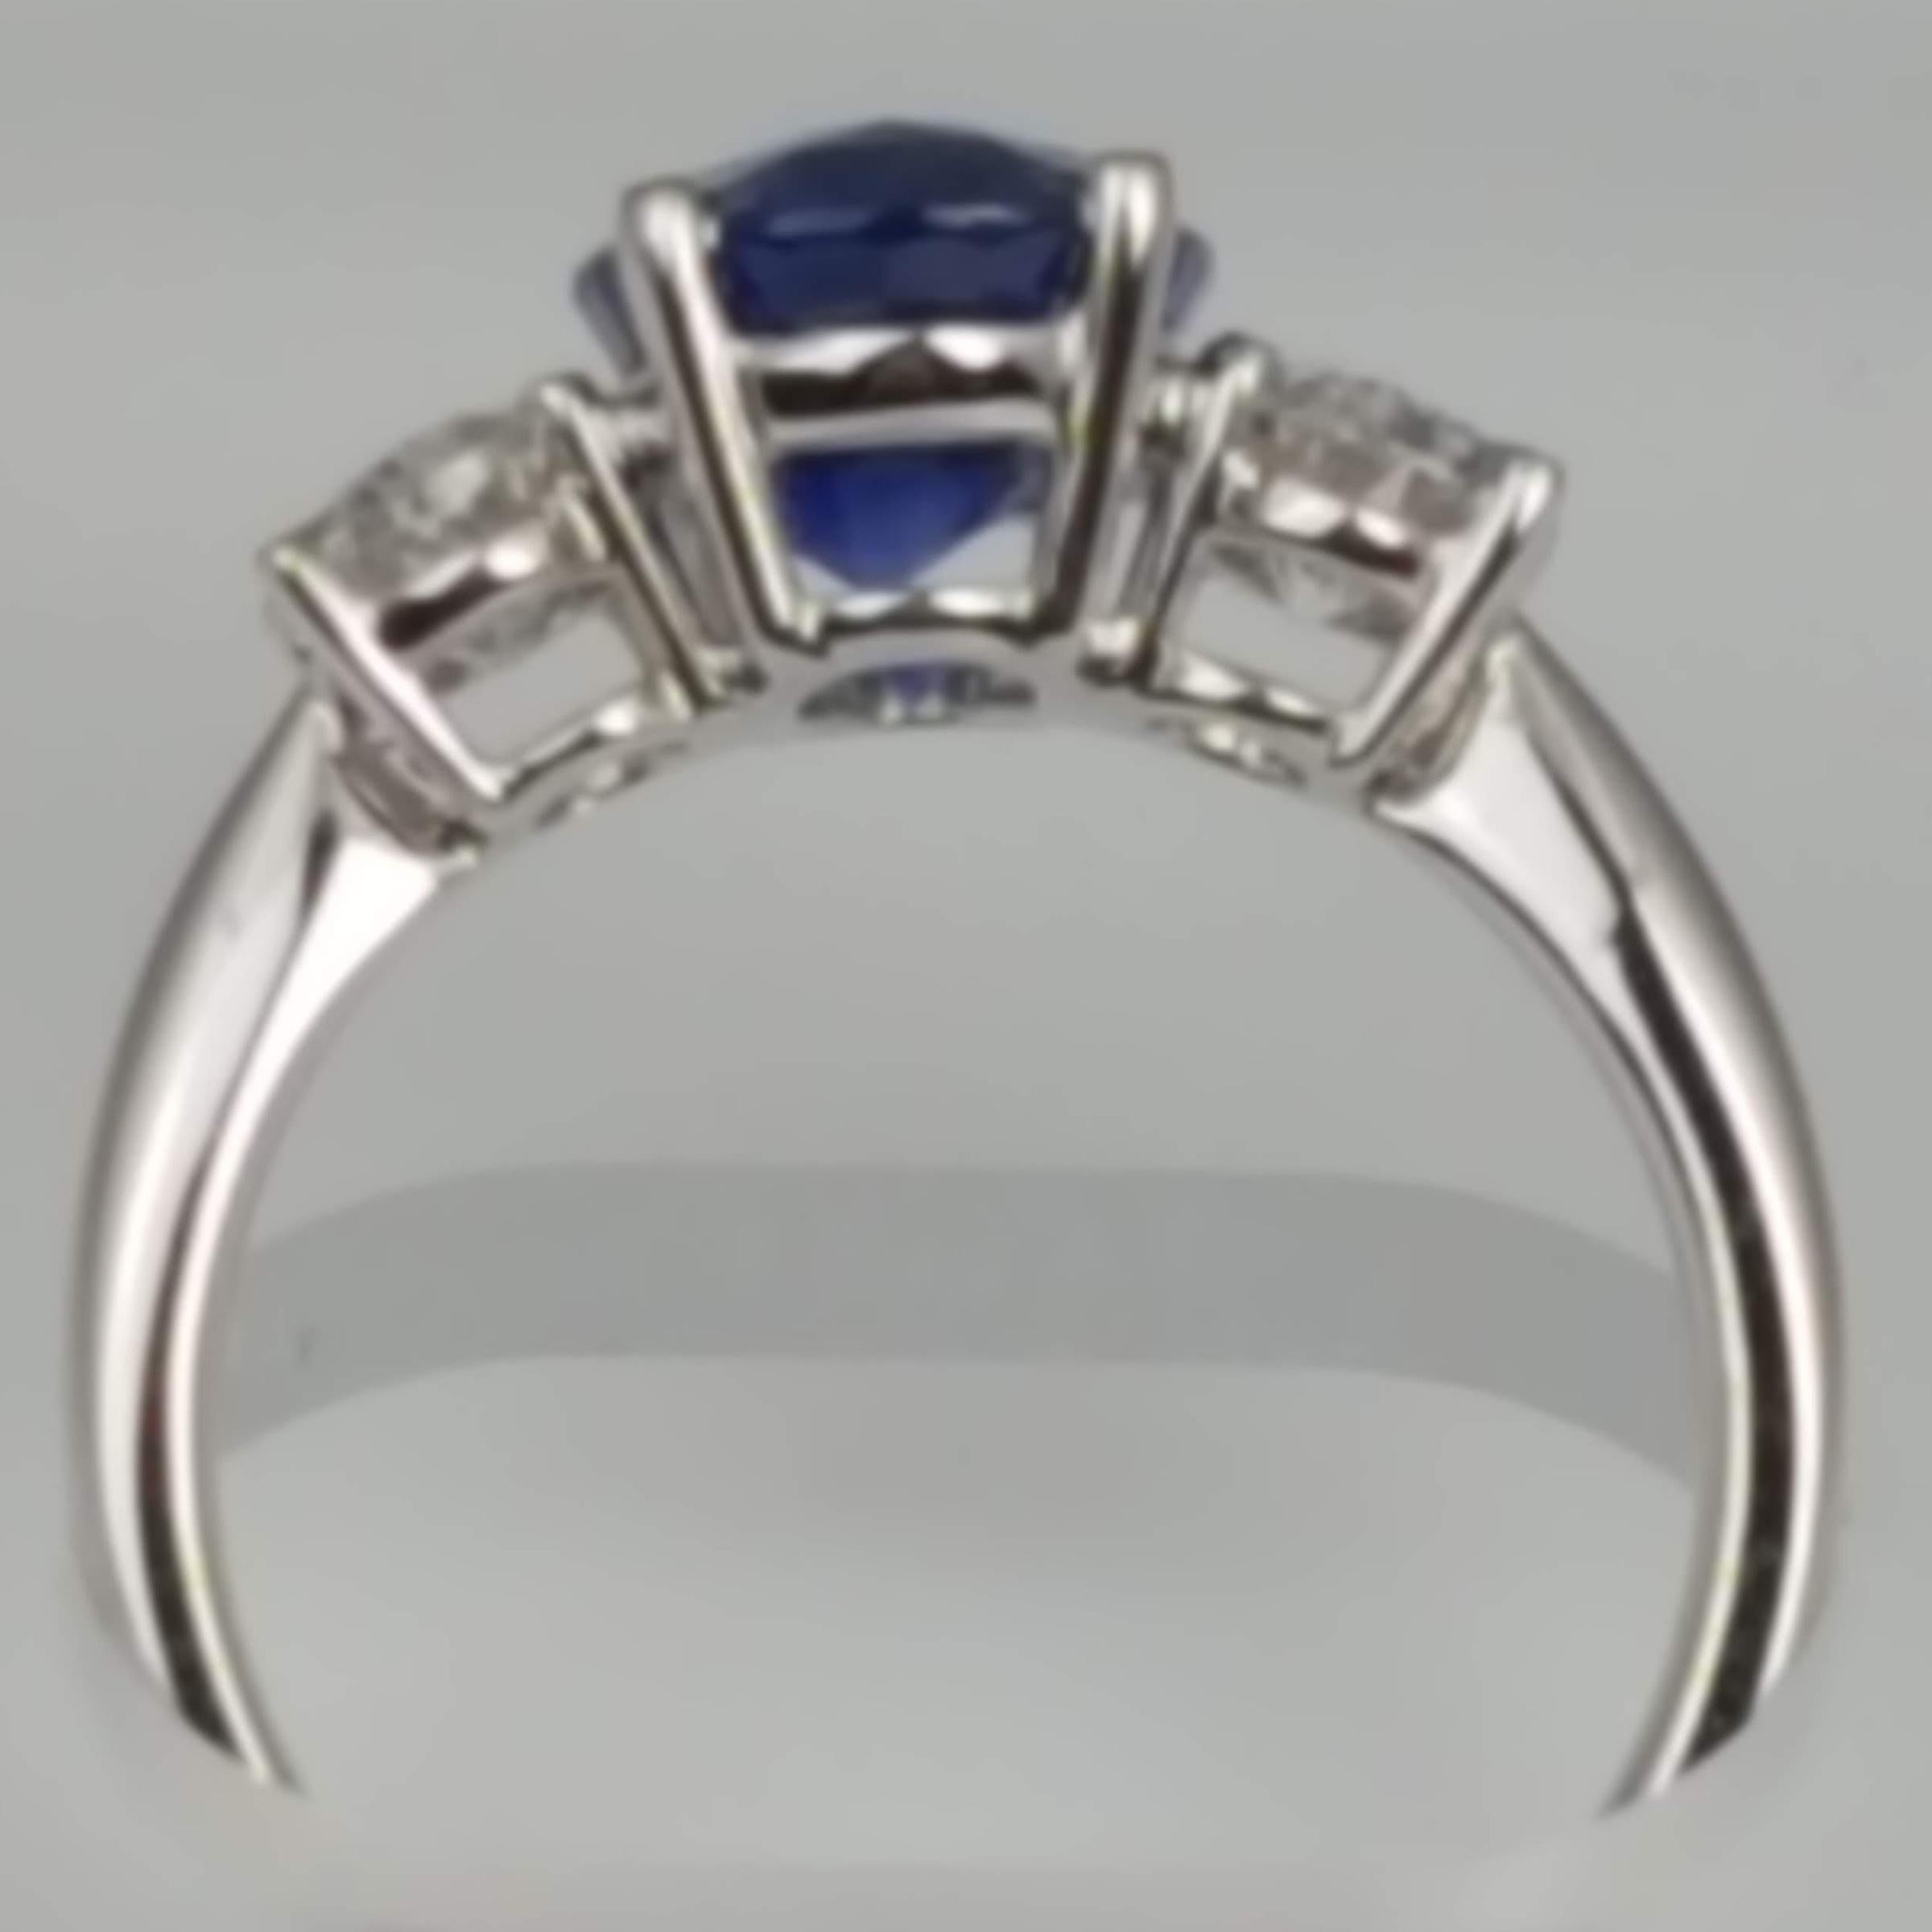 Mit einem GIA-zertifizierten blauen Ceylon-Saphir im Ovalschliff von 3,16 Karat in der Mitte, flankiert von zwei Diamanten im Ovalschliff mit einem Gesamtgewicht von 0,87 Karat, strahlt dieser Ring aus jeder Perspektive.

Angaben zur